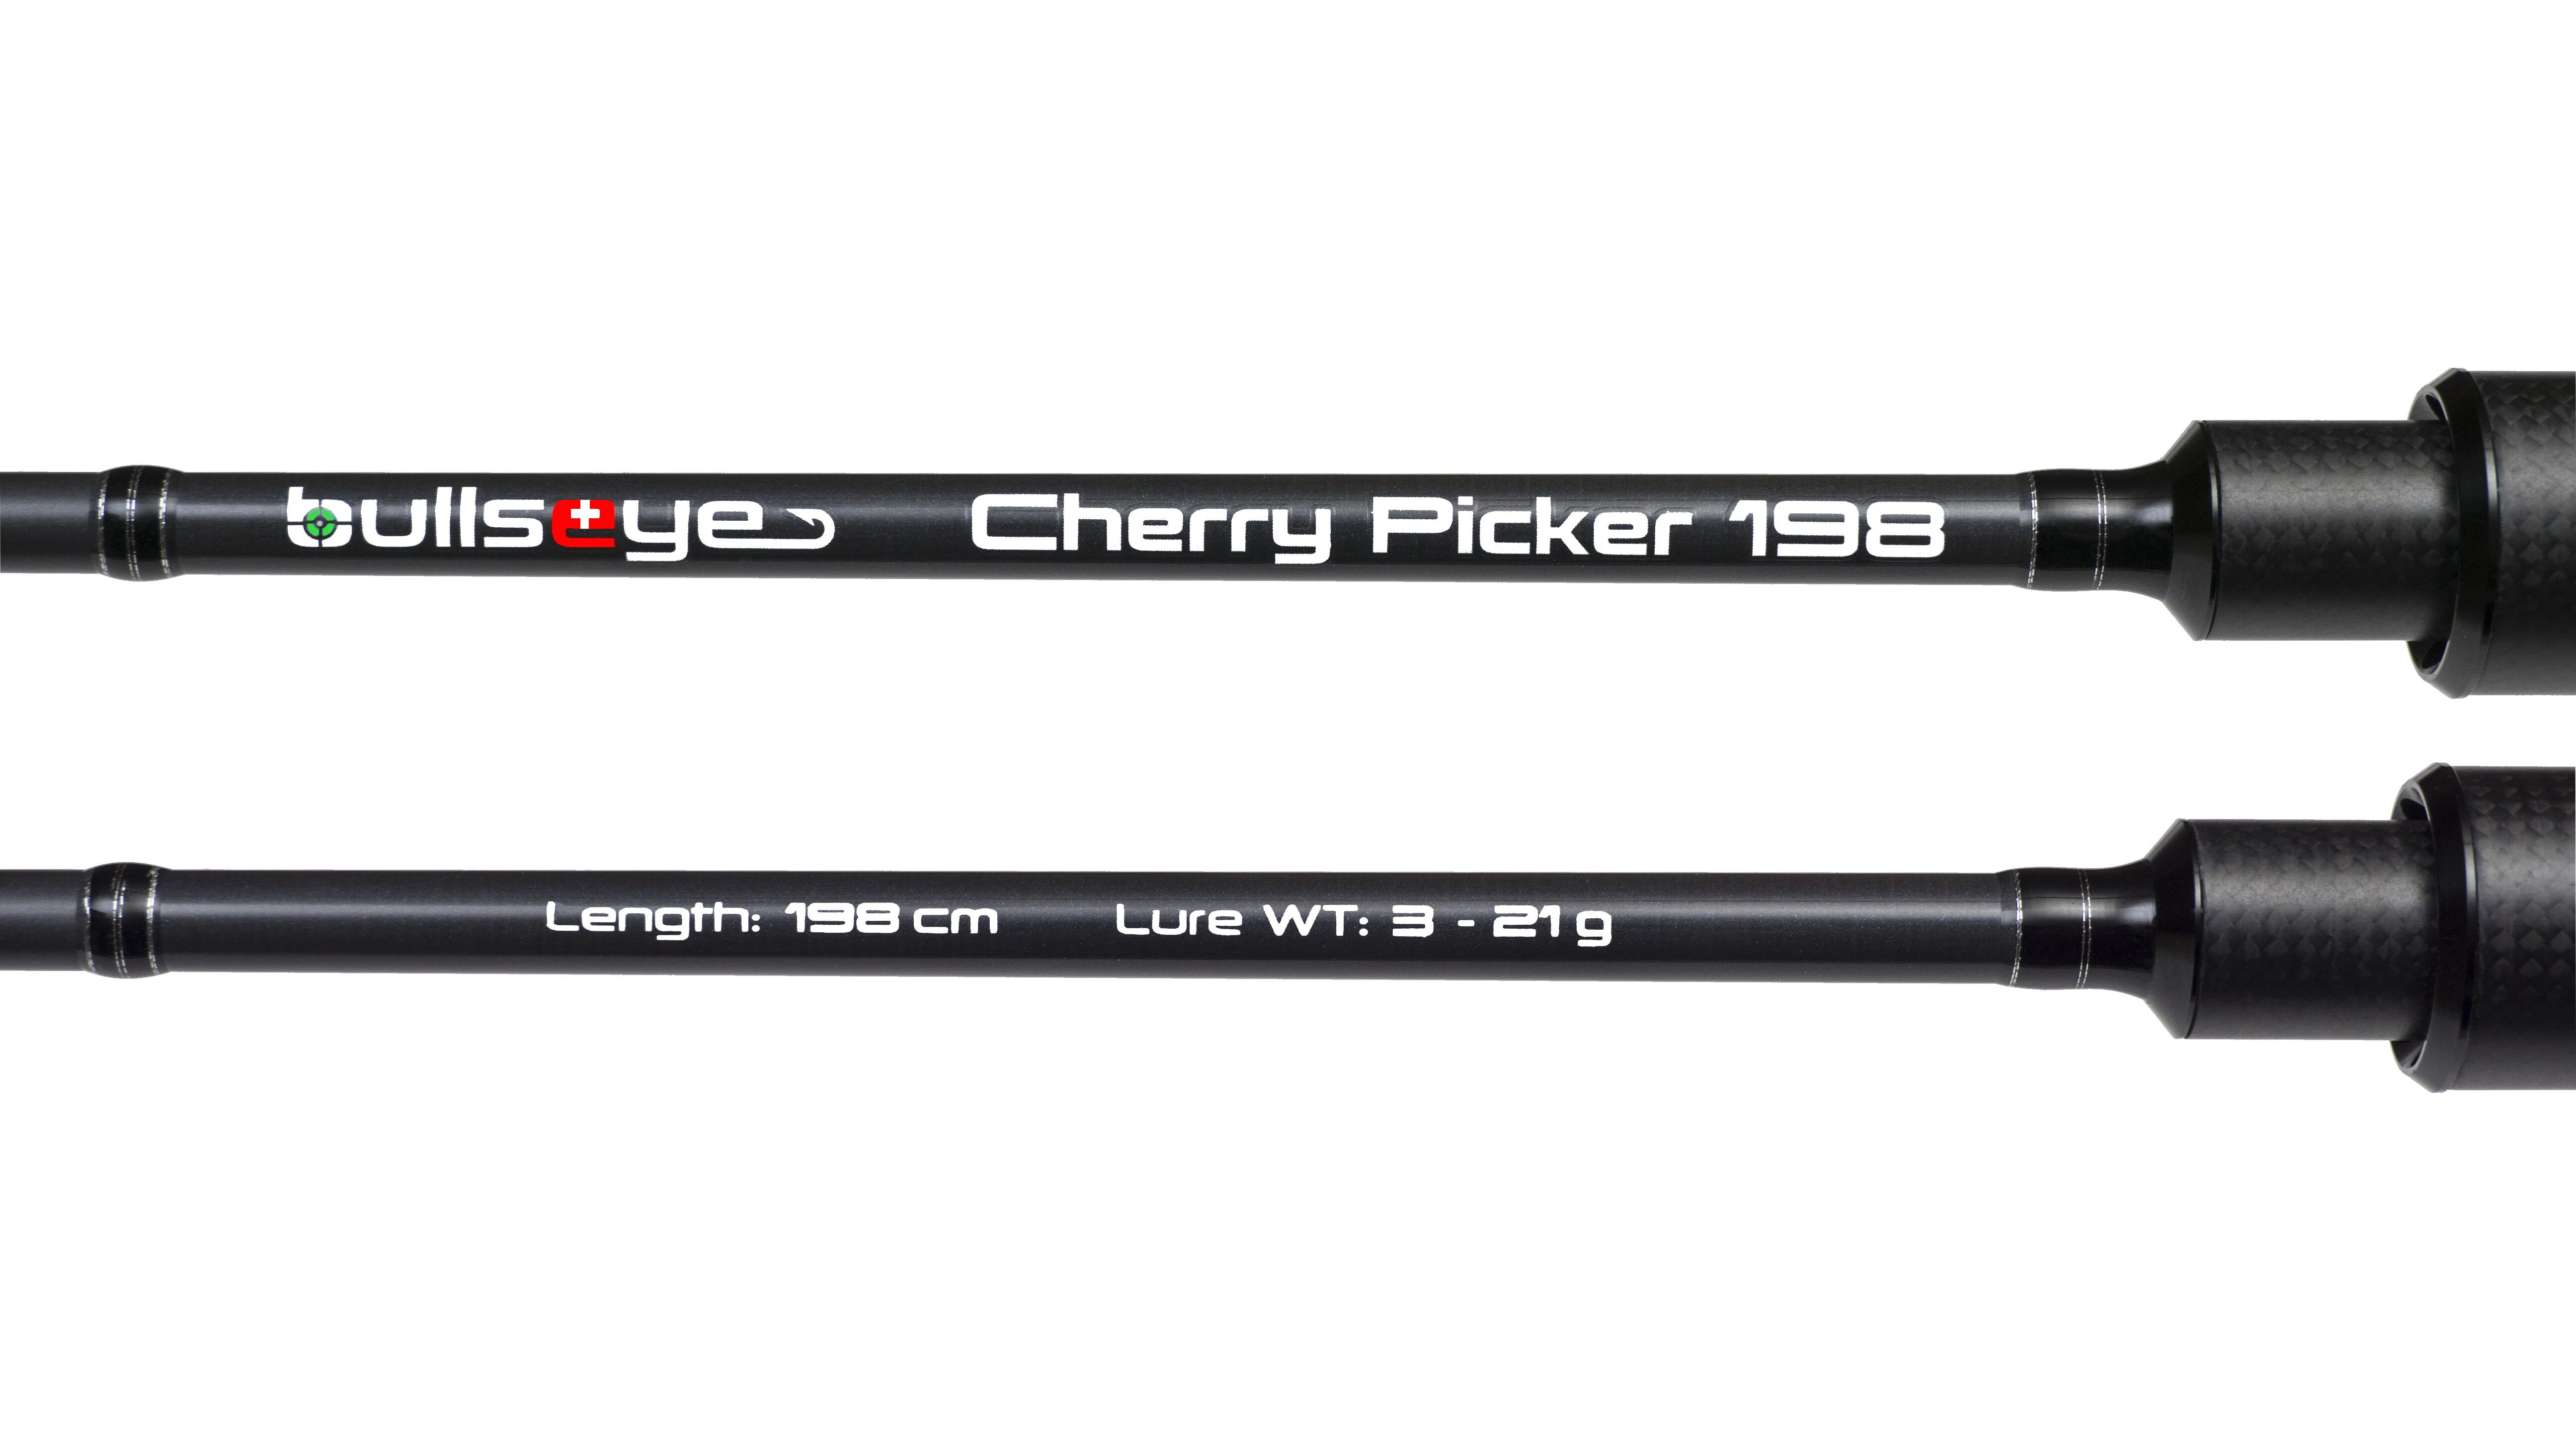 Bullseye Cherry Picker 198 3 - 21g - Castingrute